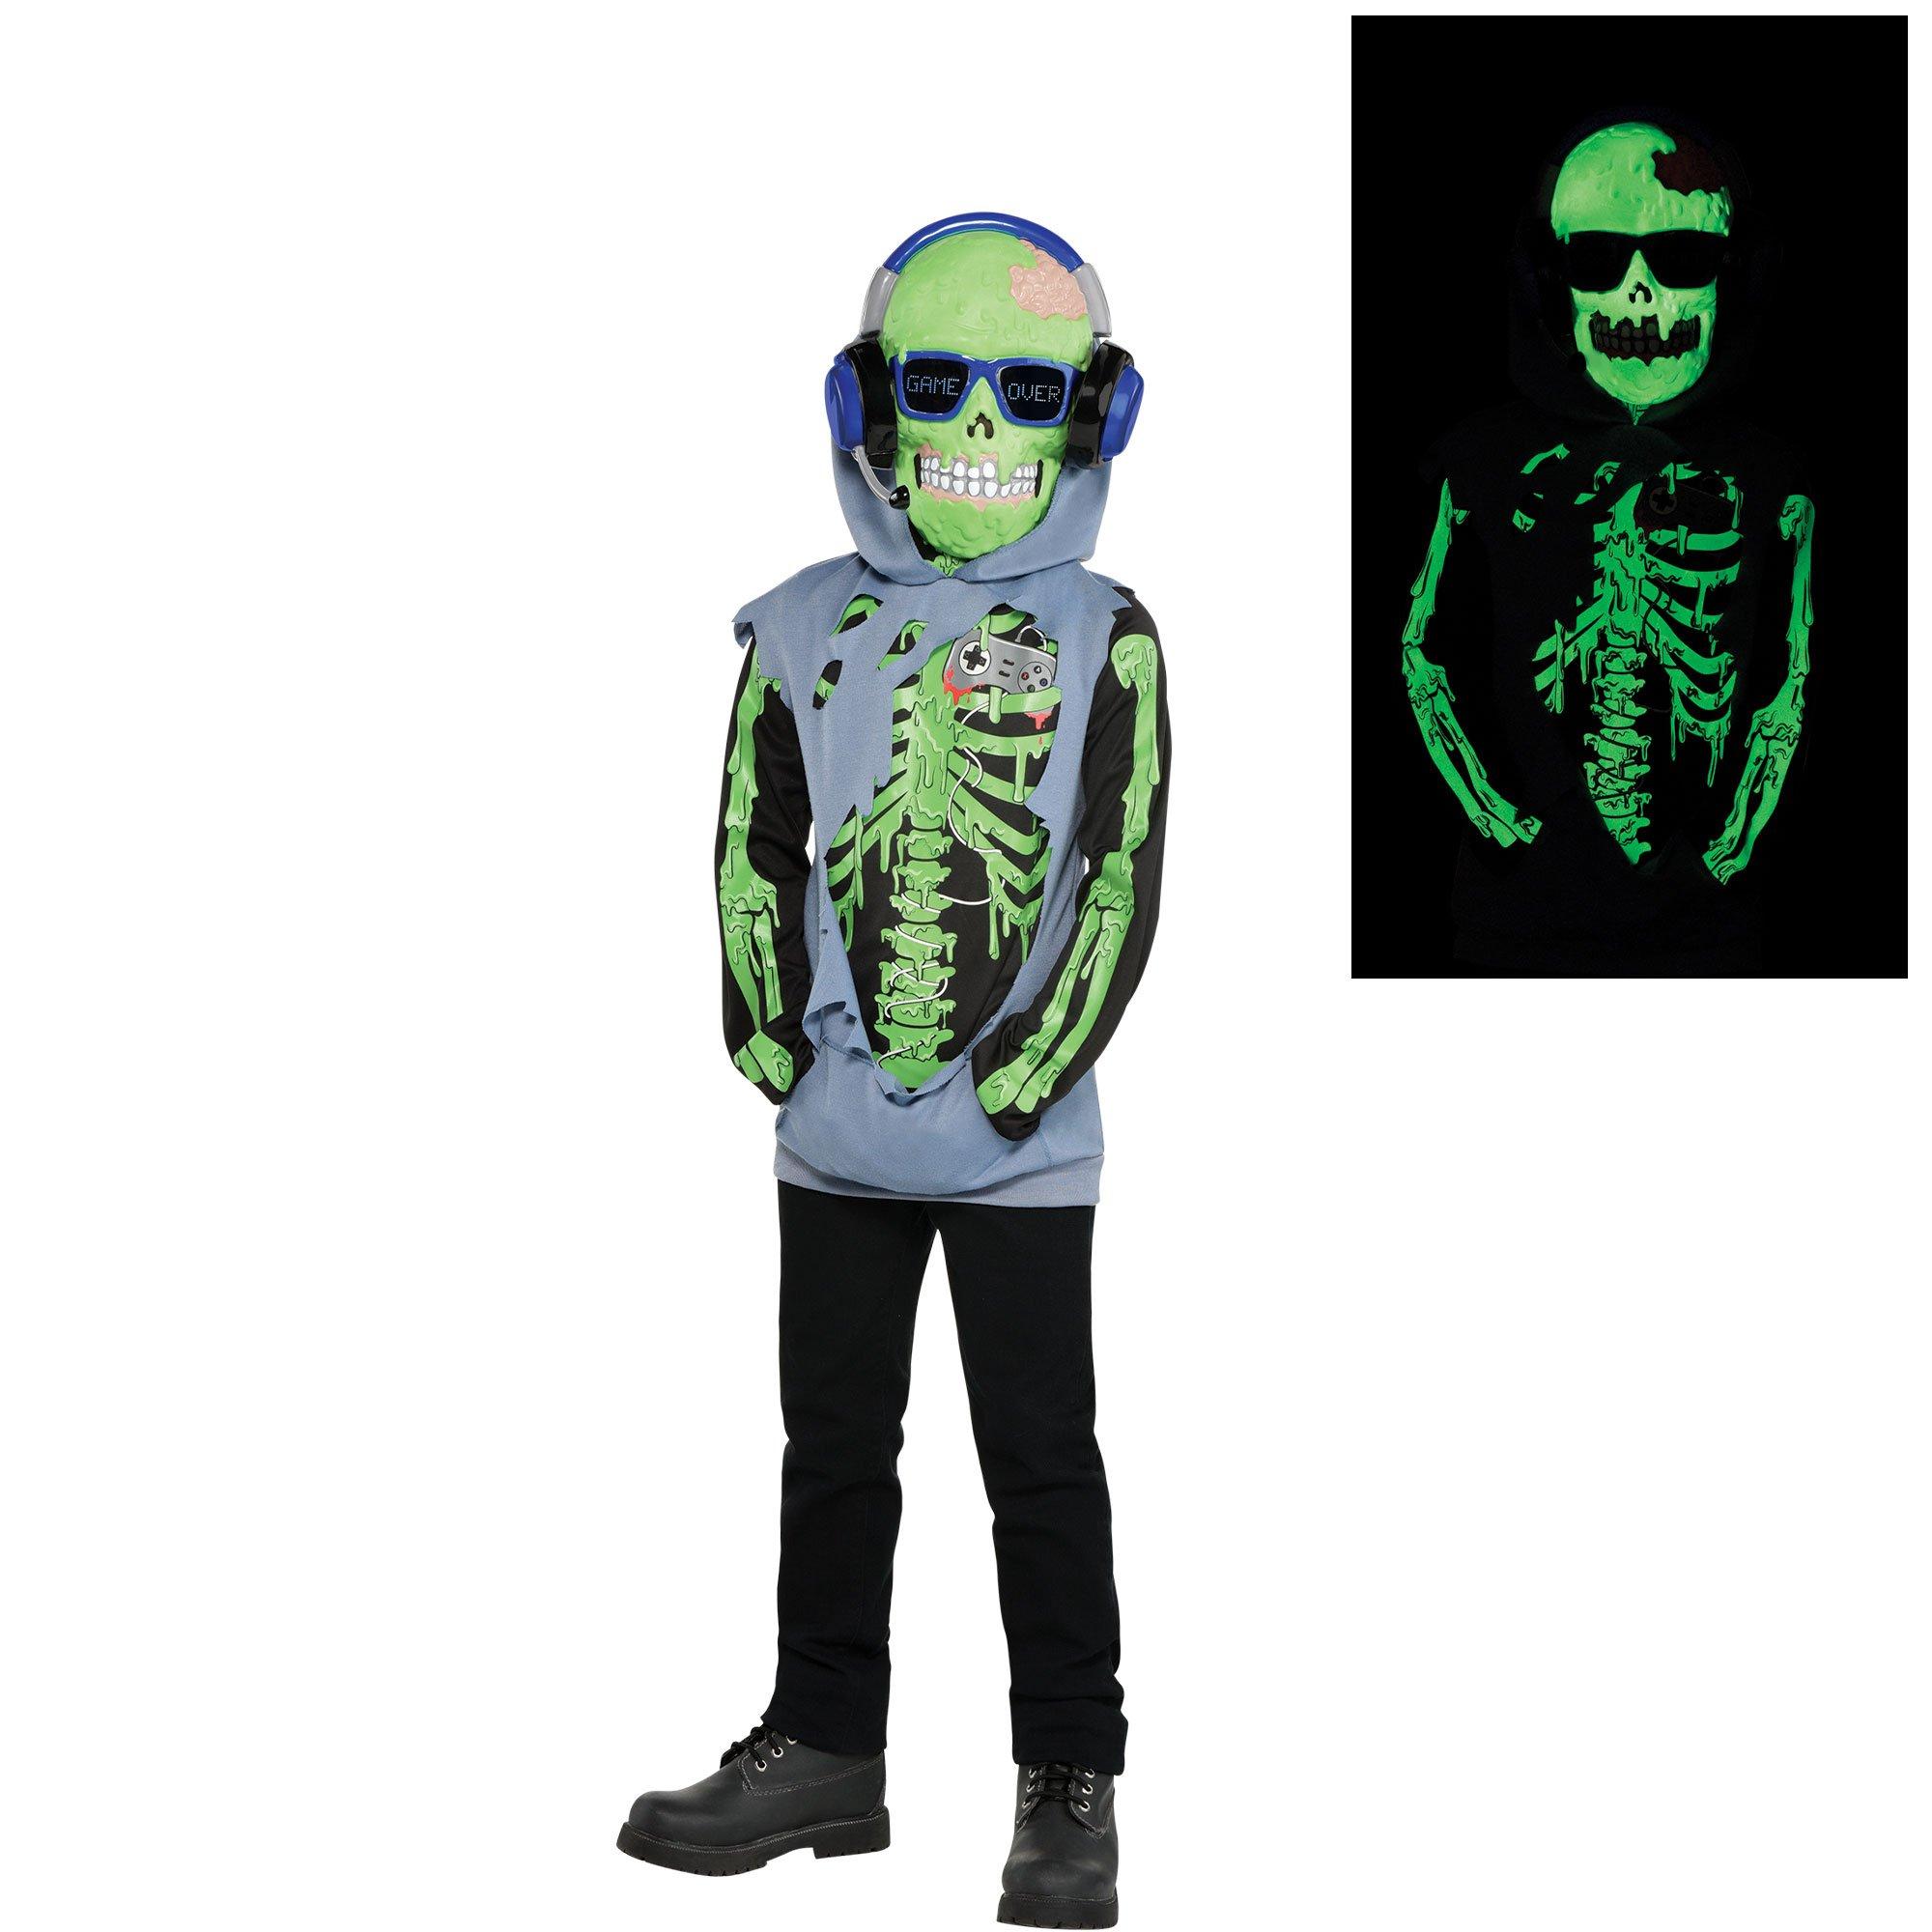 Onzorgvuldigheid Soeverein Lounge Kids' Zombie Gamer Glow-in-the-Dark Costume | Party City